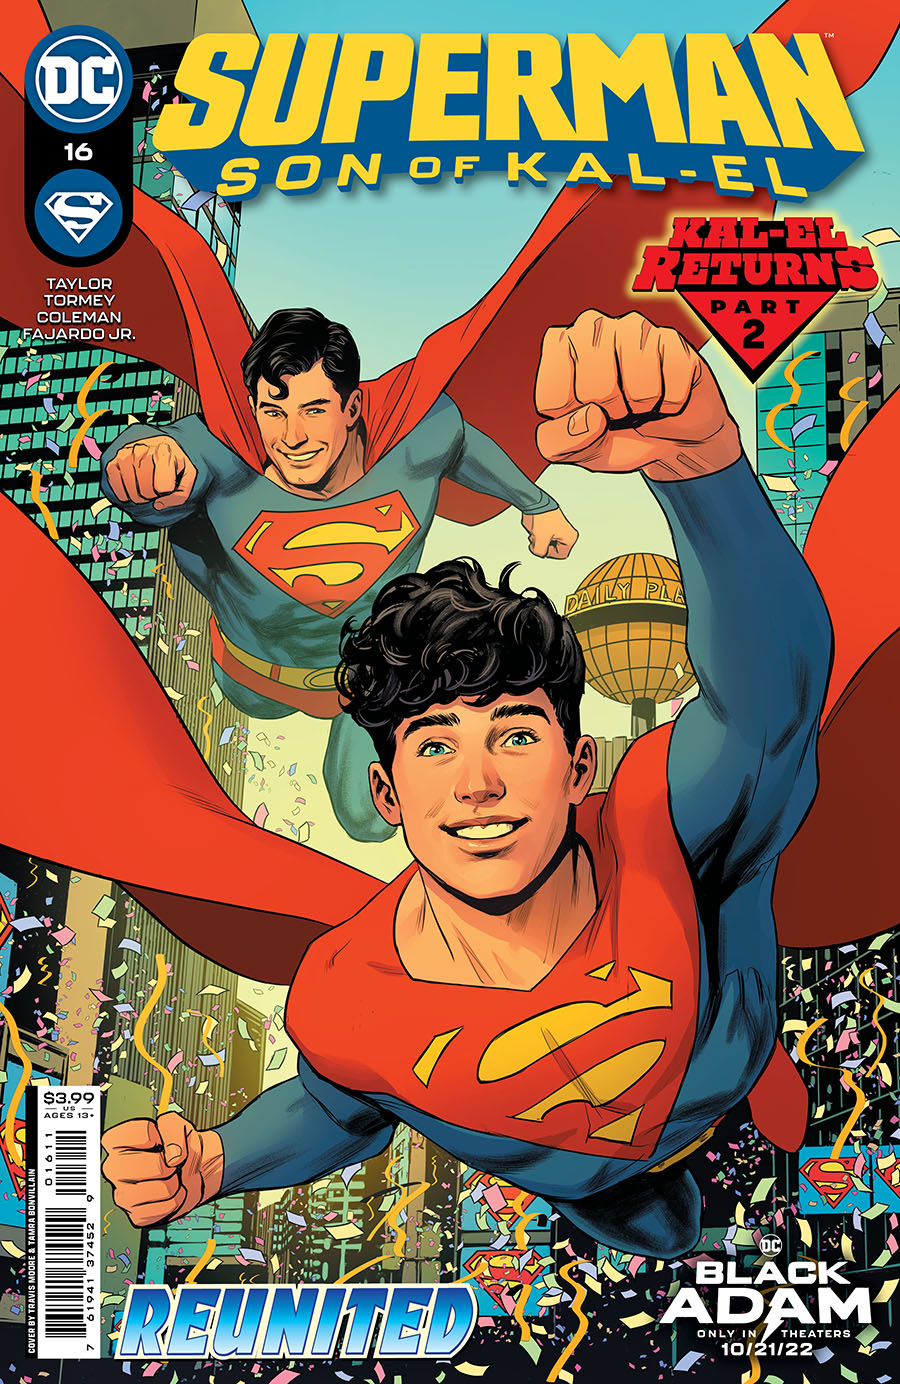 Superman Son Of Kal-El #16 Cover A Regular Travis Moore Cover (Kal-El Returns Part 2)